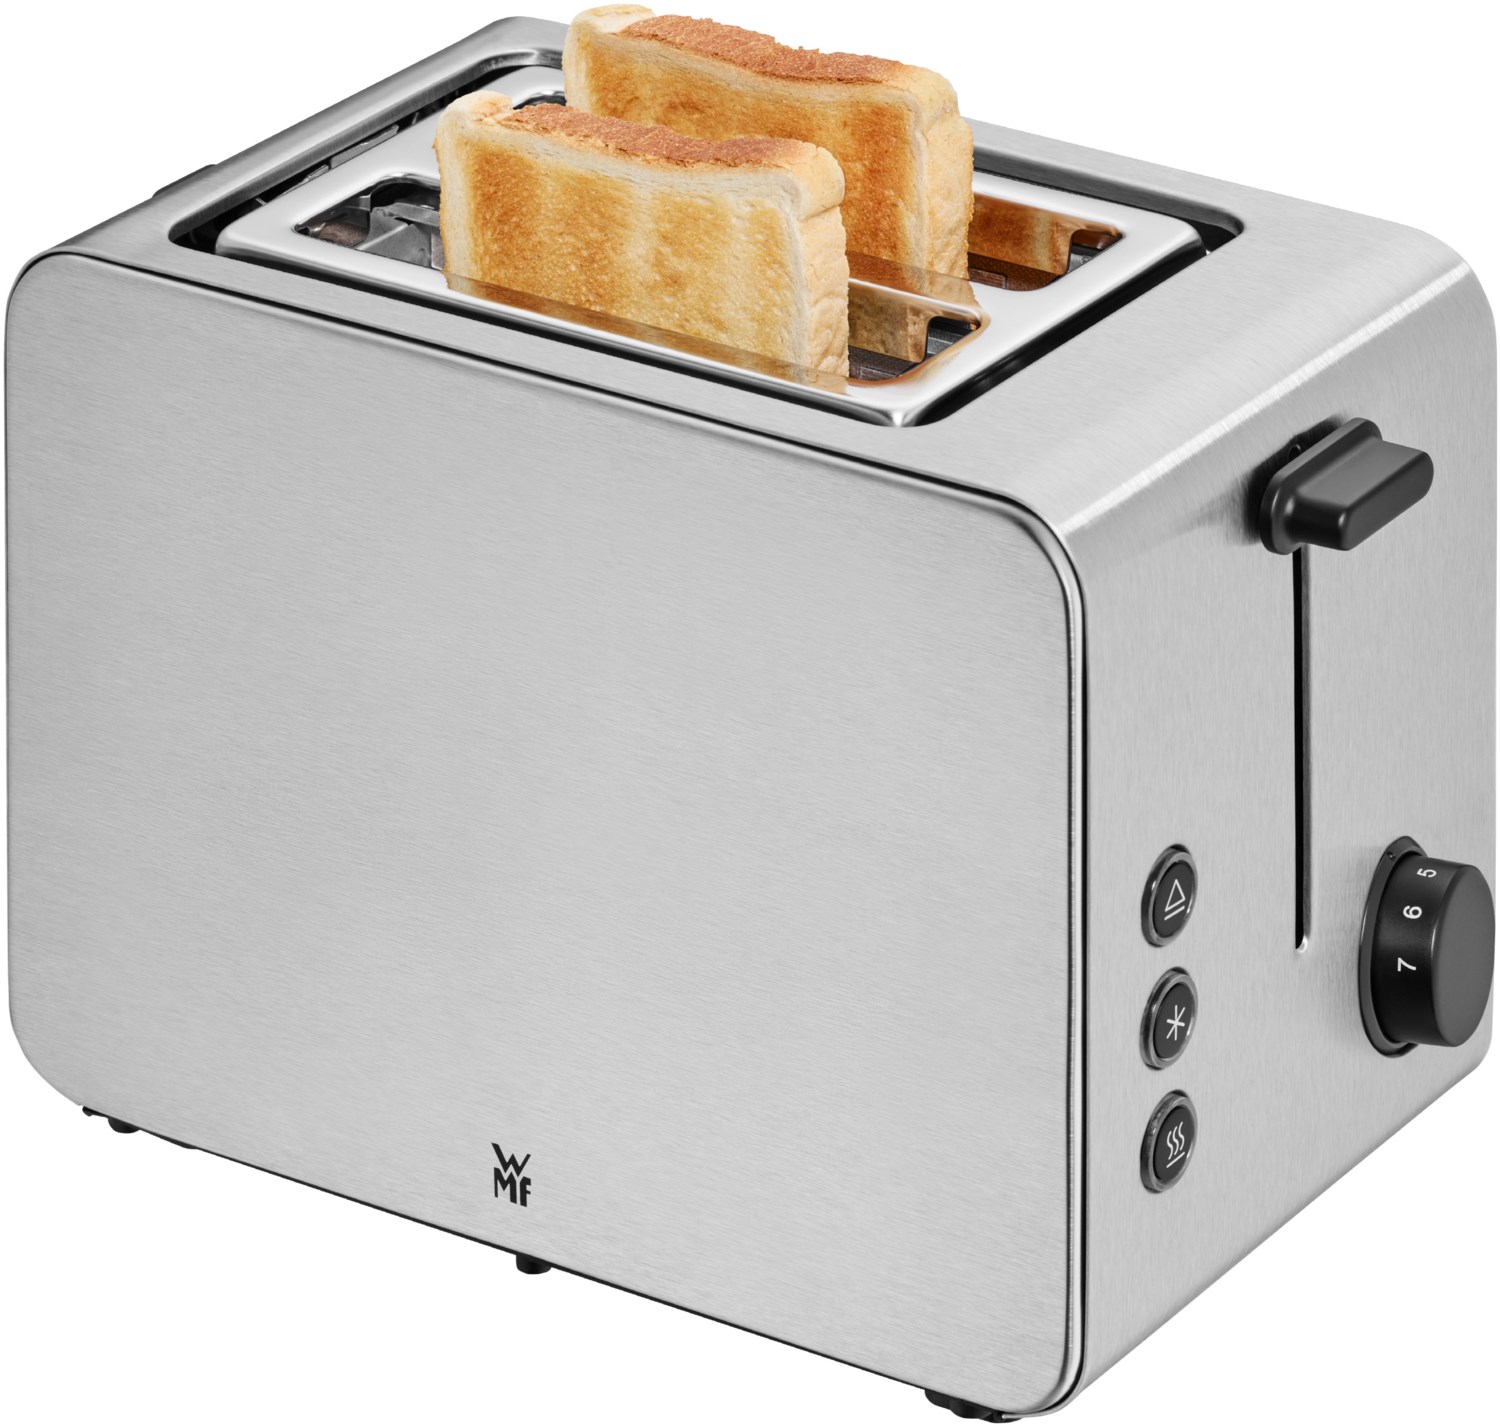 STELIO Toaster cromargan